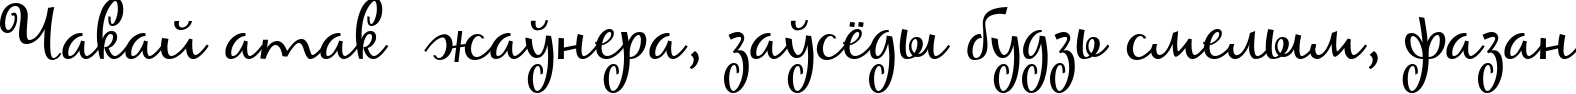 Пример написания шрифтом Maya текста на белорусском